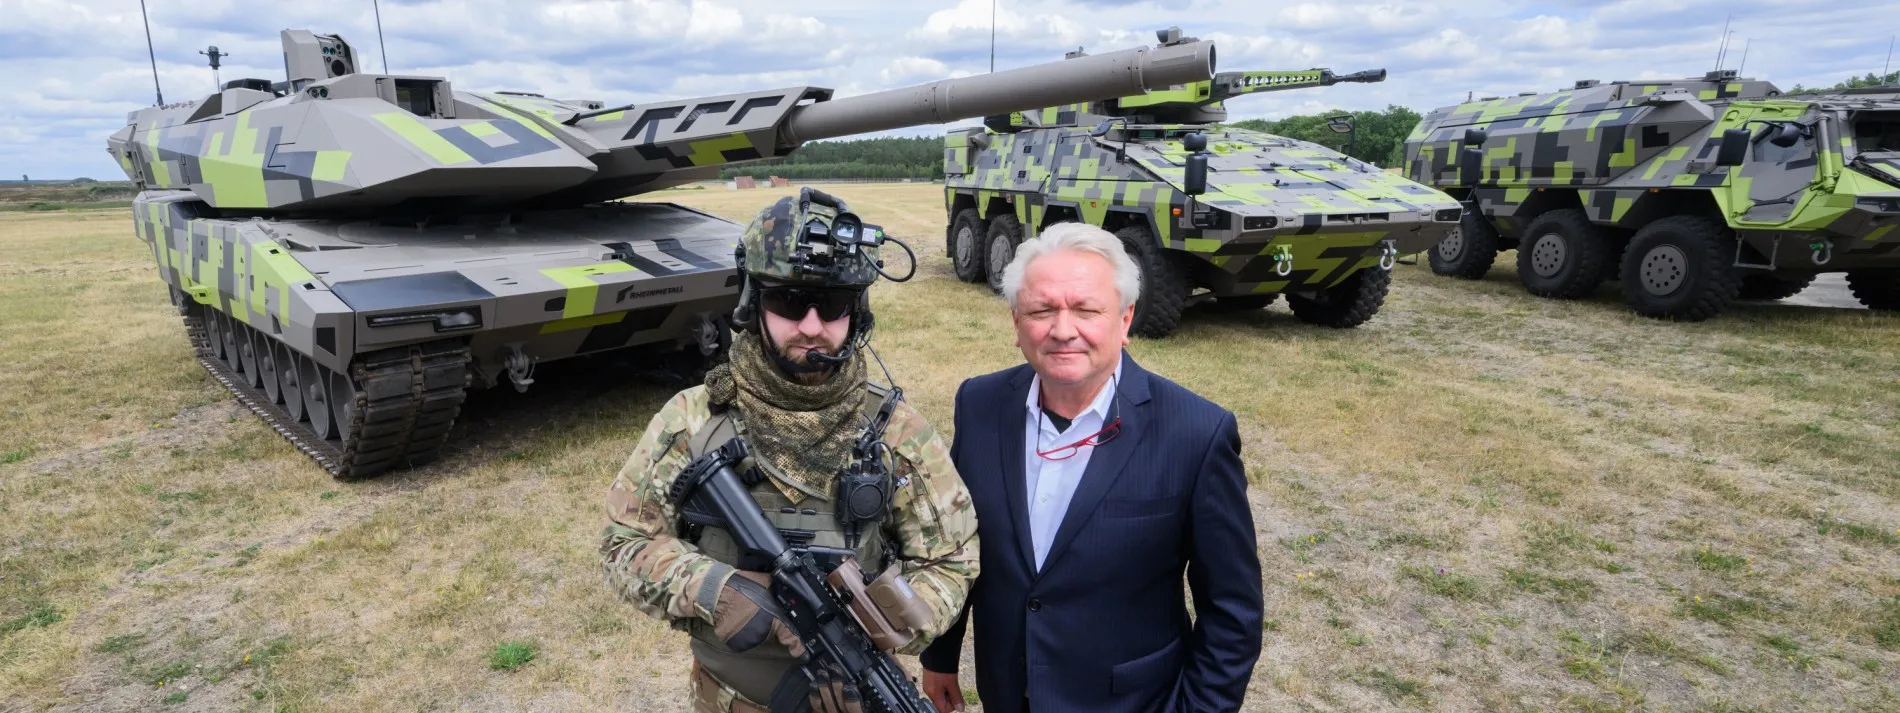 Rheinmetall-Chef Armin Papperger und ein Soldat vor dem Kampfpanzer Panther KF51 – den Rheinmetall gerne in der Ukraine bauen will.